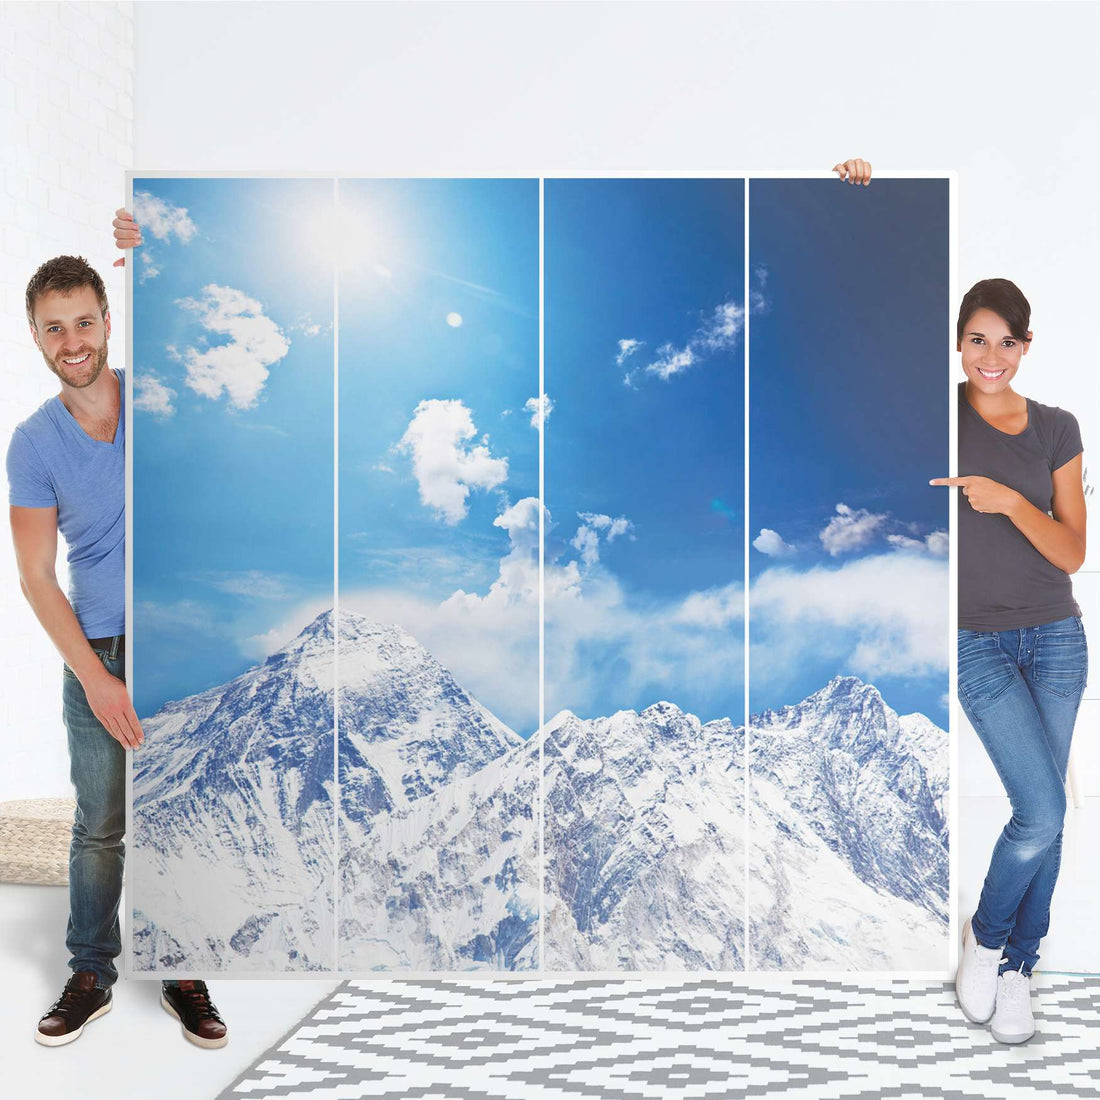 Klebefolie für Schränke Everest - IKEA Pax Schrank 201 cm Höhe - 4 Türen - Folie